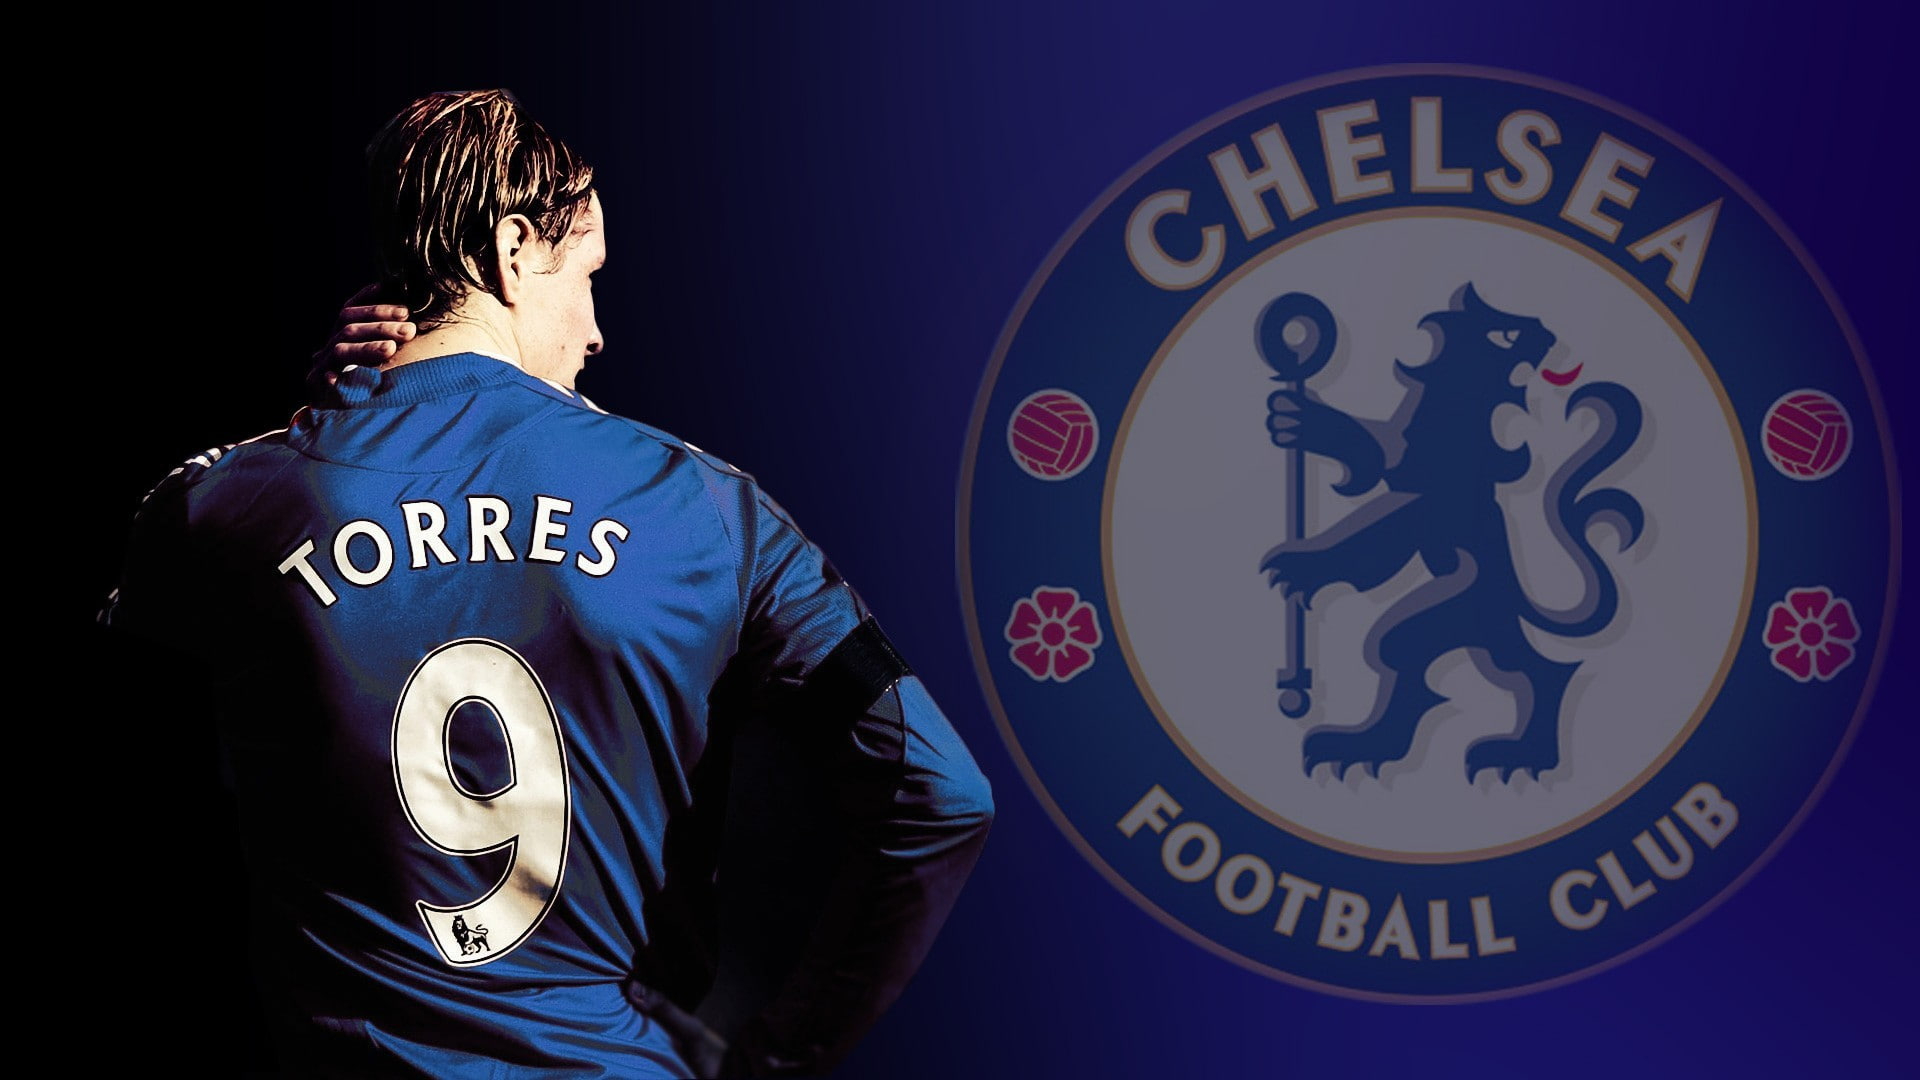 Ảnh nền Torres Chelsea cực đẹp